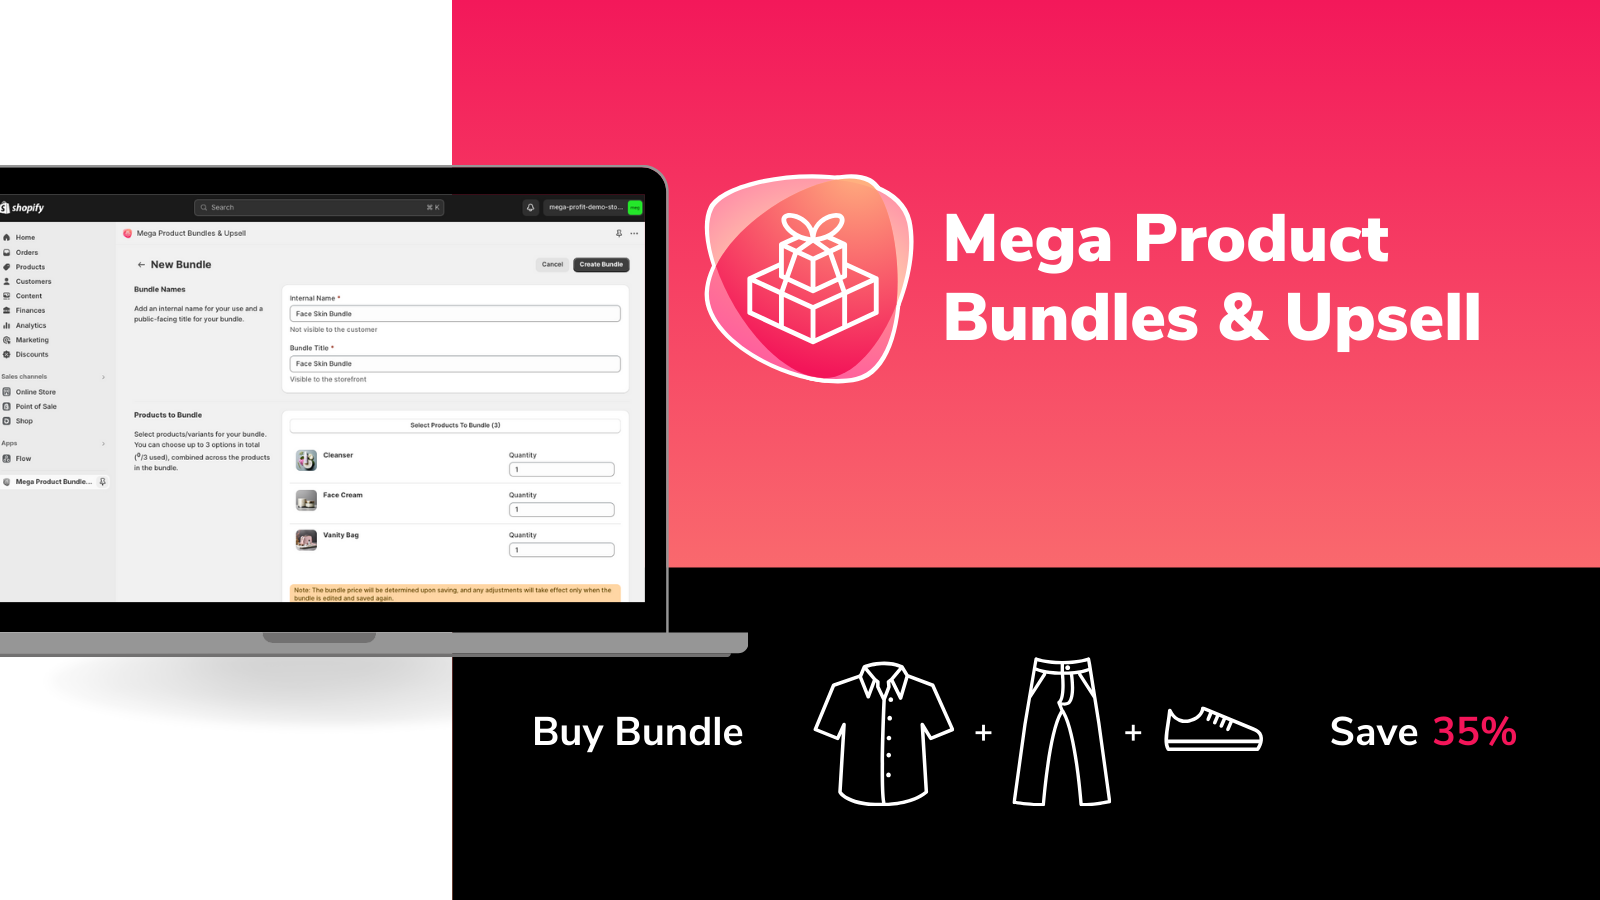 Mega Product Bundles & Upsell - enkel opsætning